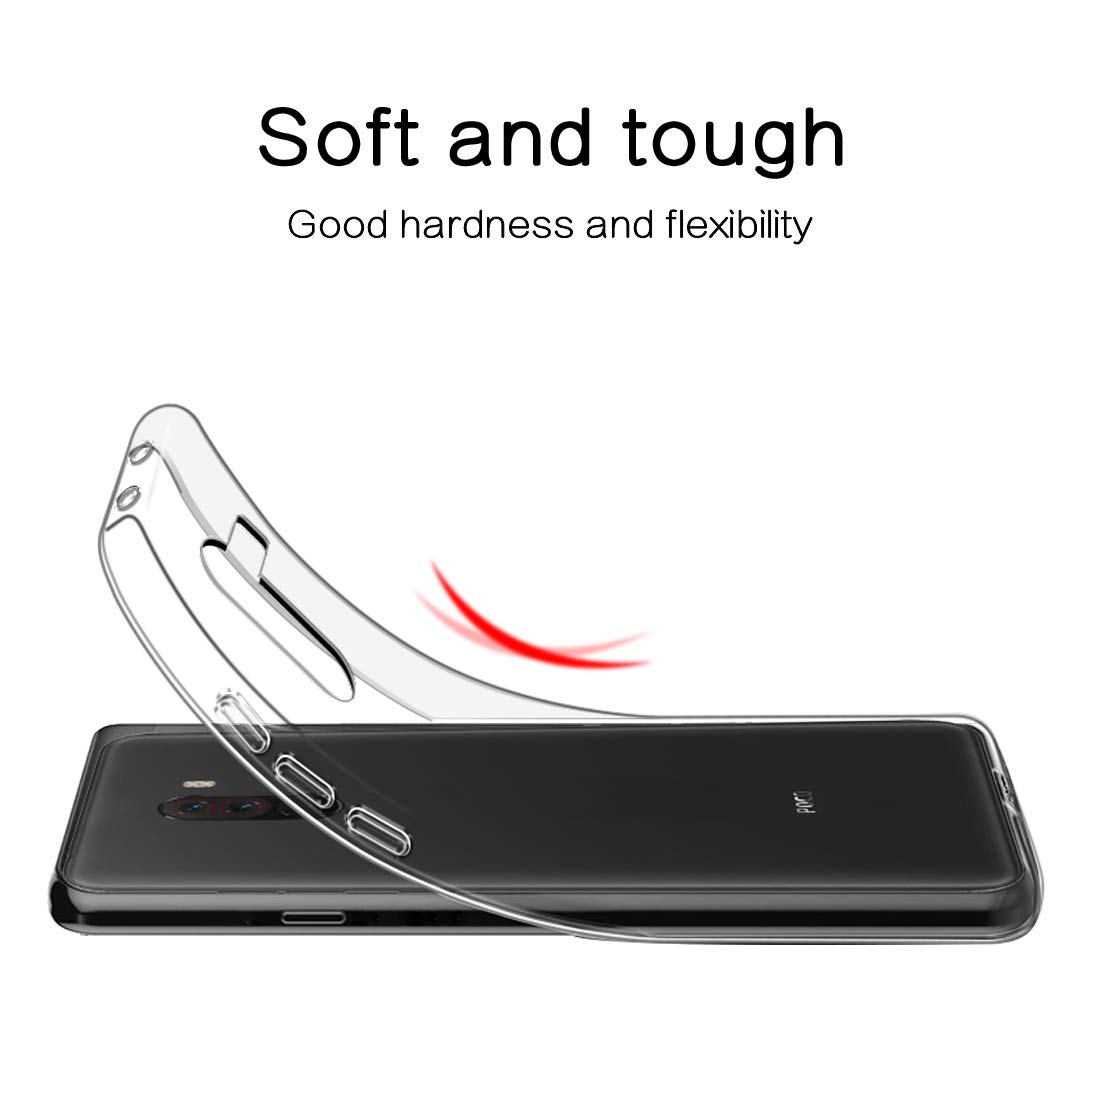 Ốp lưng dẻo dành cho Xiaomi Pocofone F1 hiệu Ultra Thin mỏng 0.6mm chống trầy - Hàng nhập khẩu